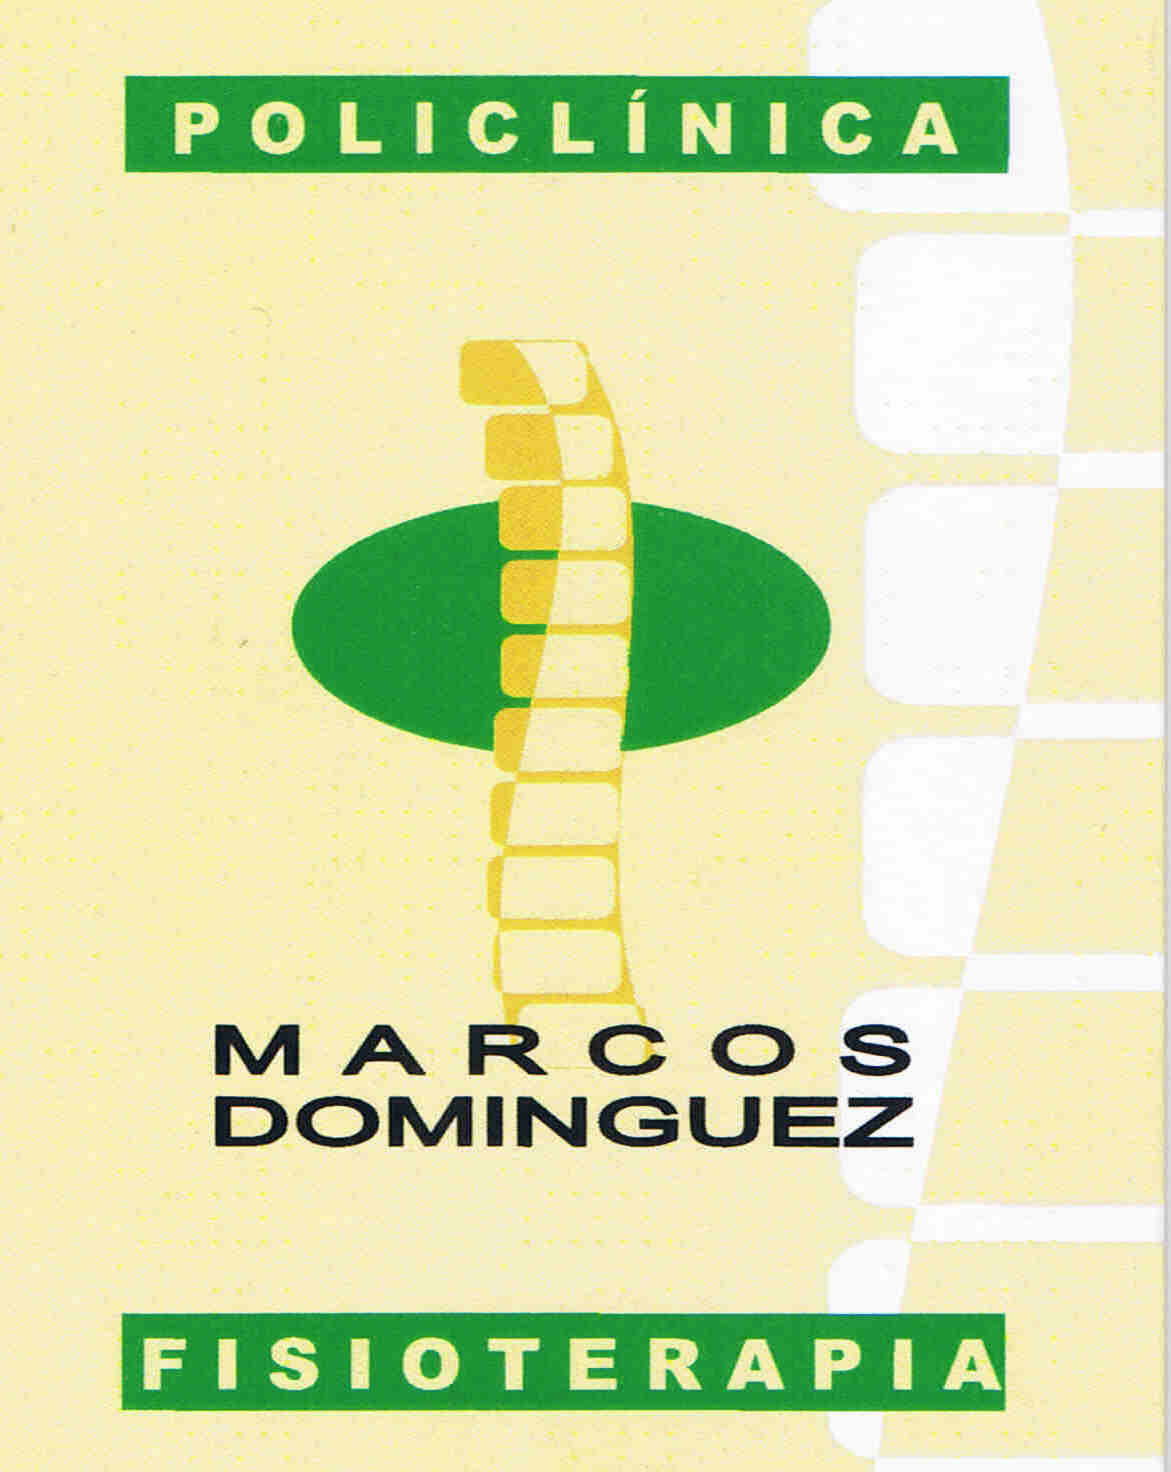 Logotipo de la clínica POLICLINICA MARCOS DOMINGUEZ FISIOTERAPIA